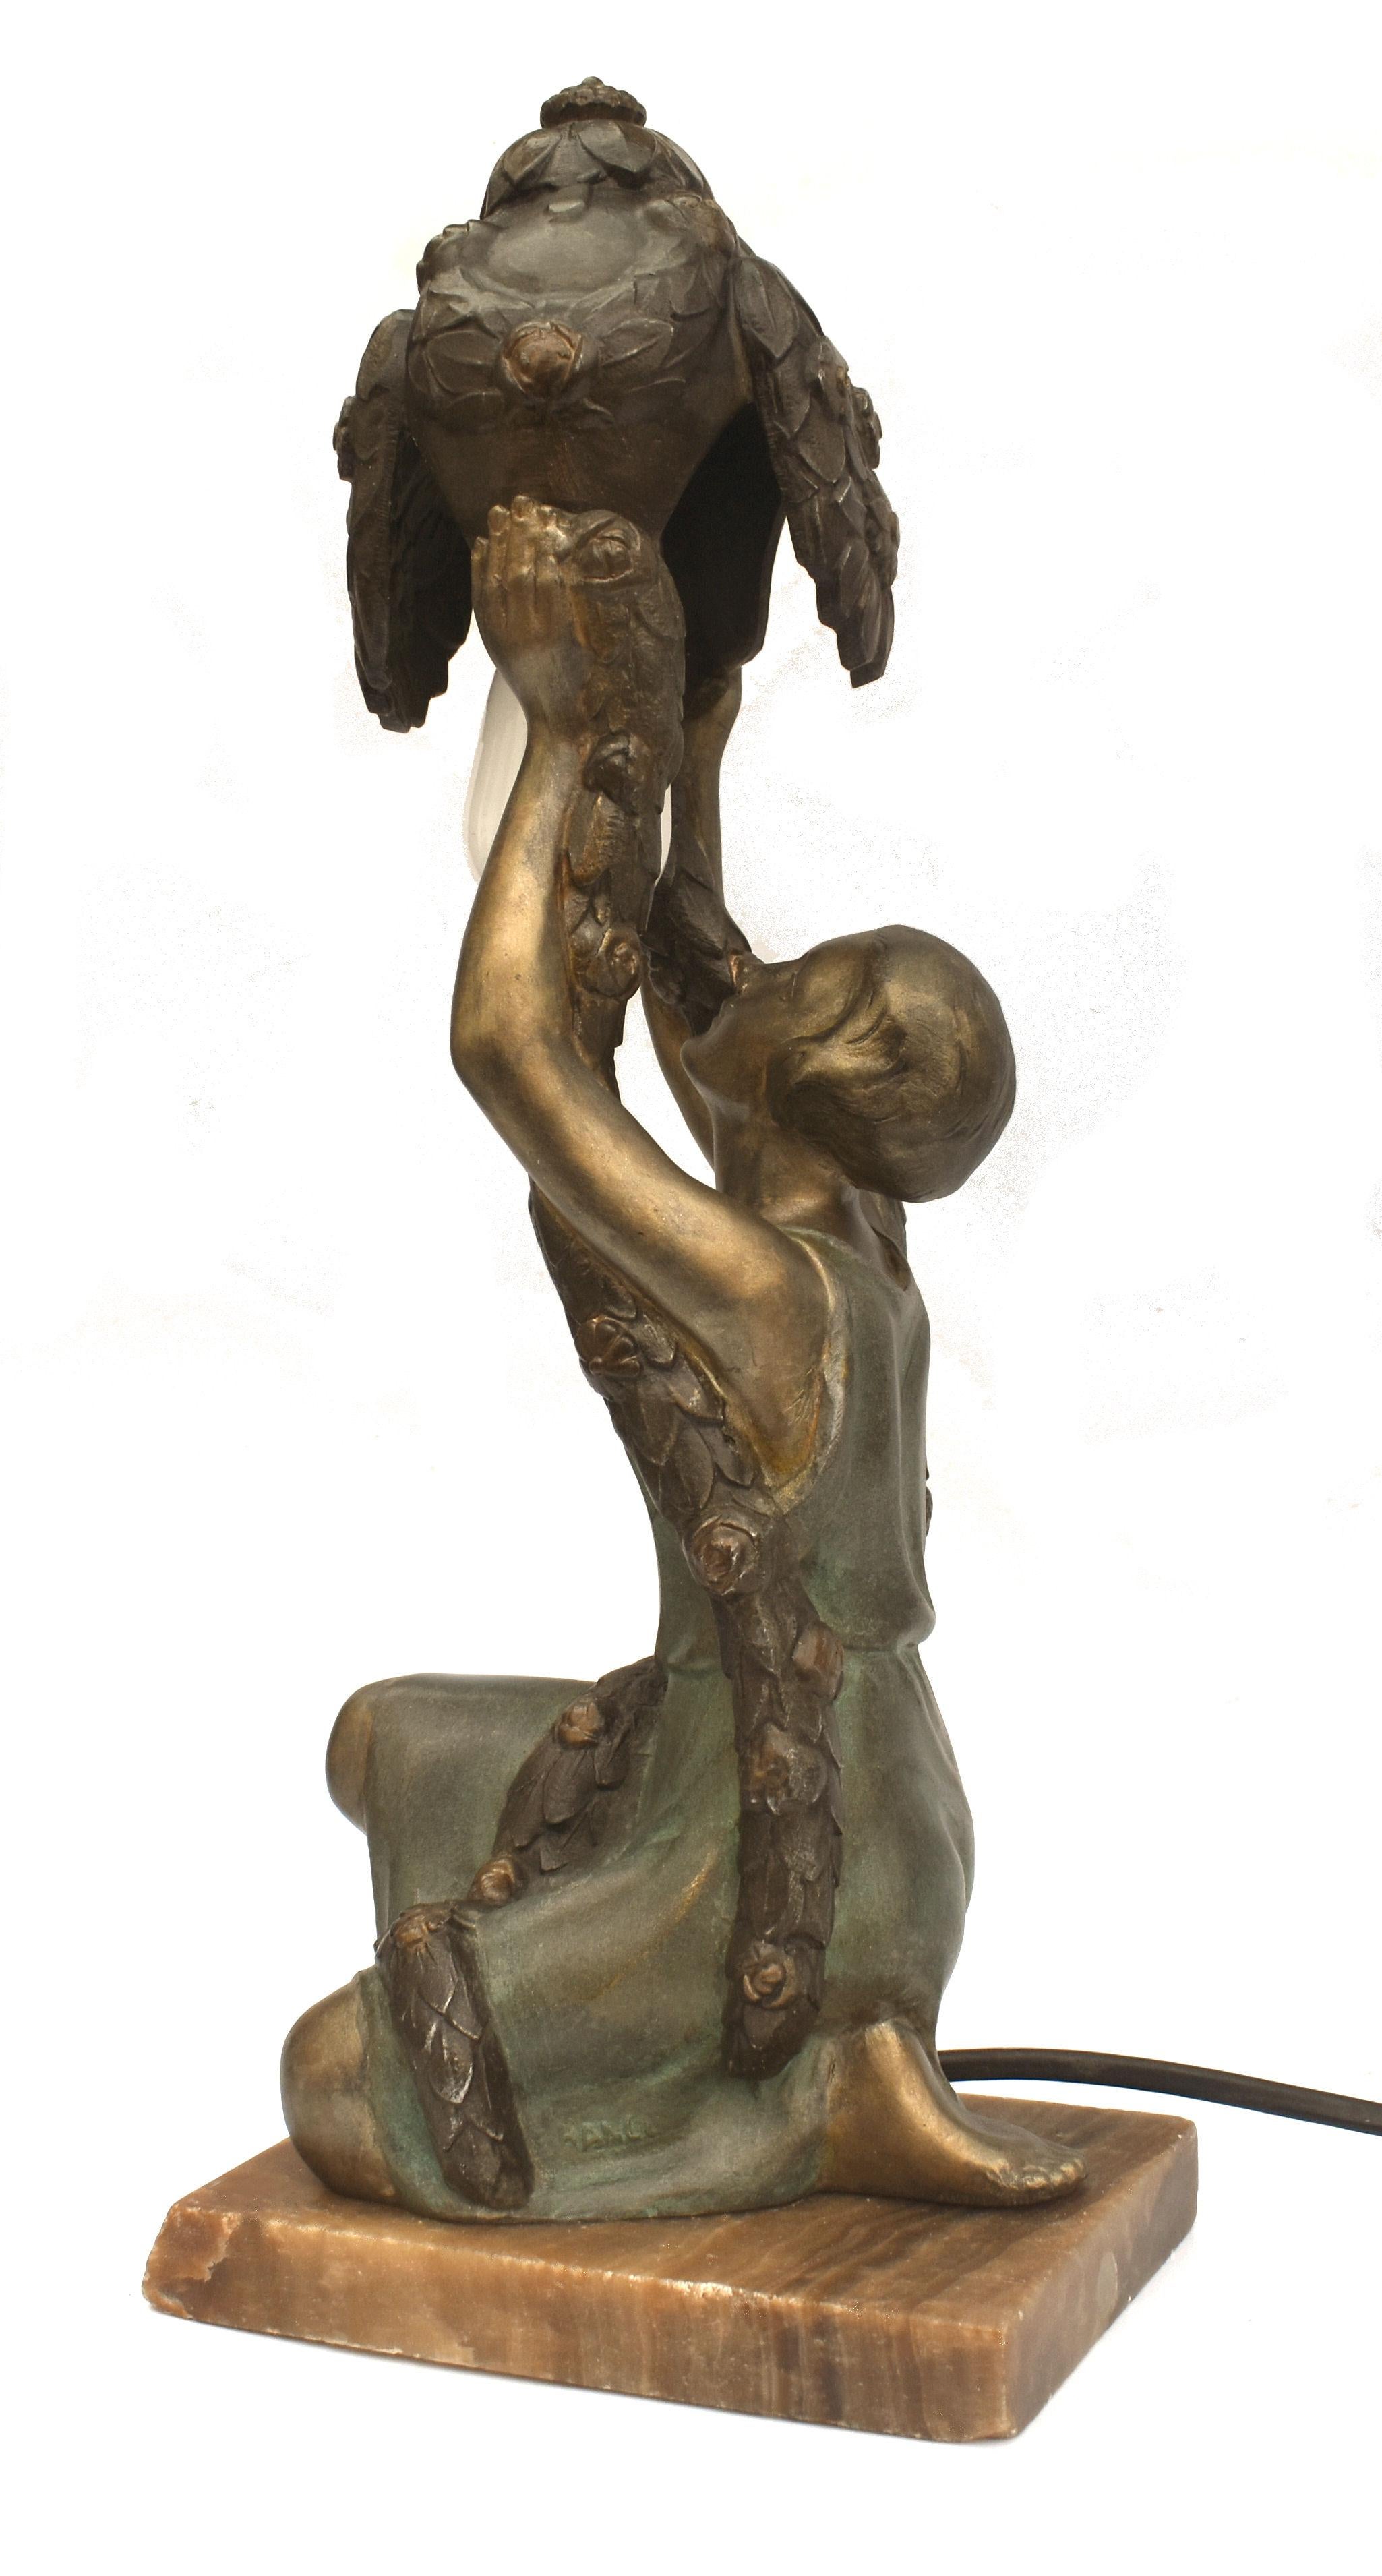 D'une hauteur impressionnante de 34 cm, cette lampe de table originale en étain peint à froid des années 1930 est signée P. Sega, France, et représente une jeune femme tenant en l'air un feuillage. Agenouillée sur un socle d'onyx, elle est en très